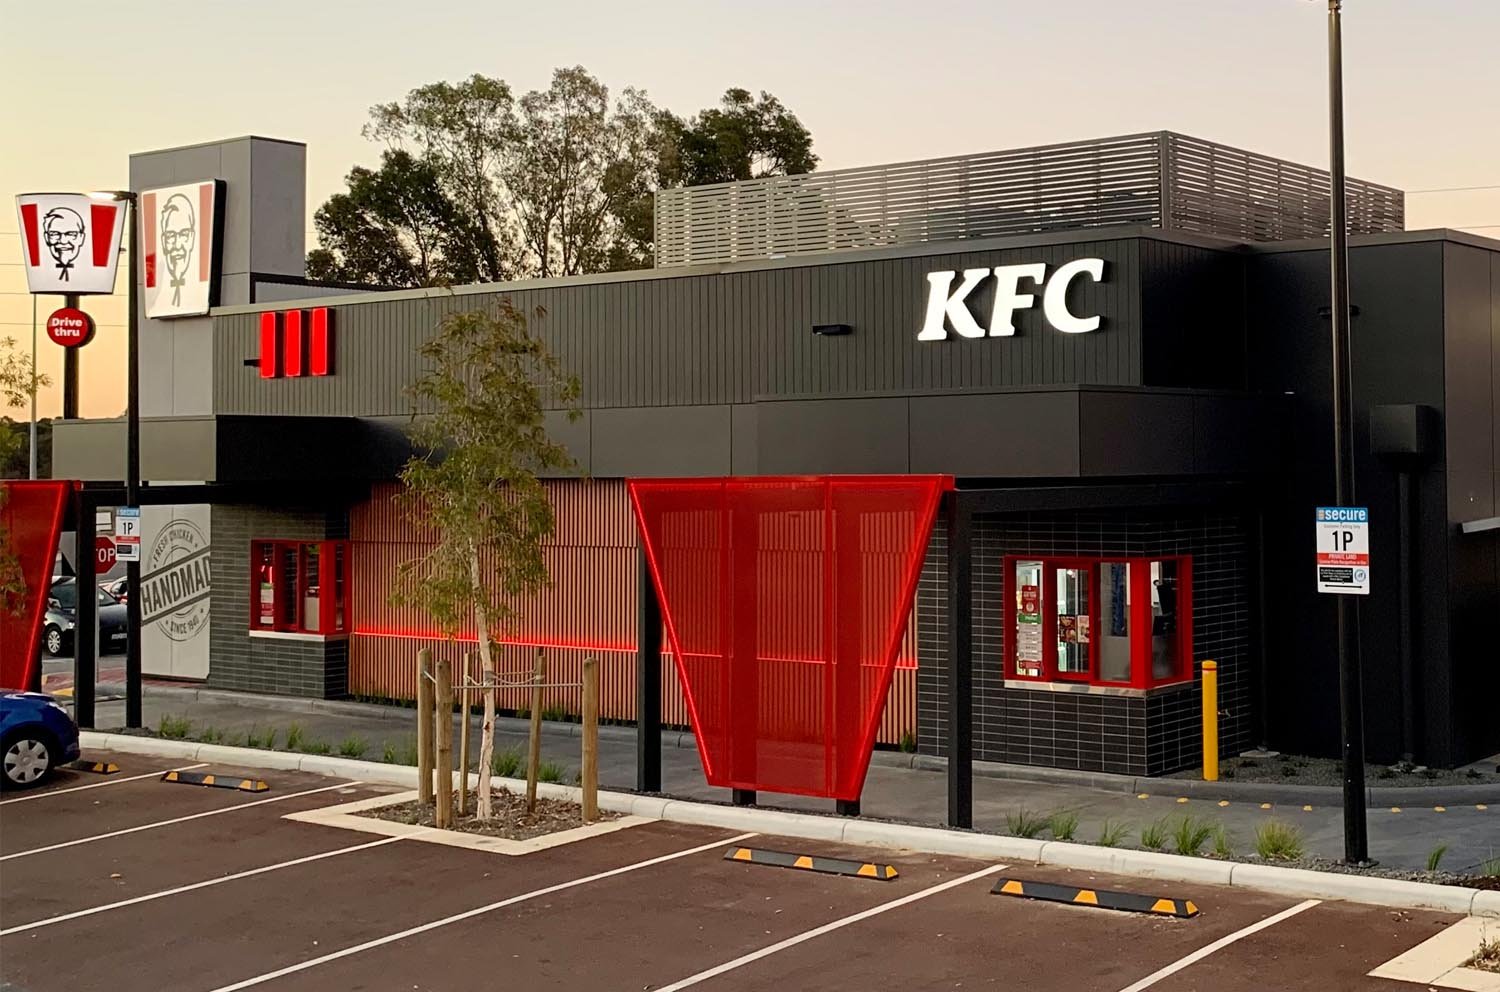 architecture-kfc-restaurant-design-murdoch-western-australia-designer-architect-commercial-parking.jpg